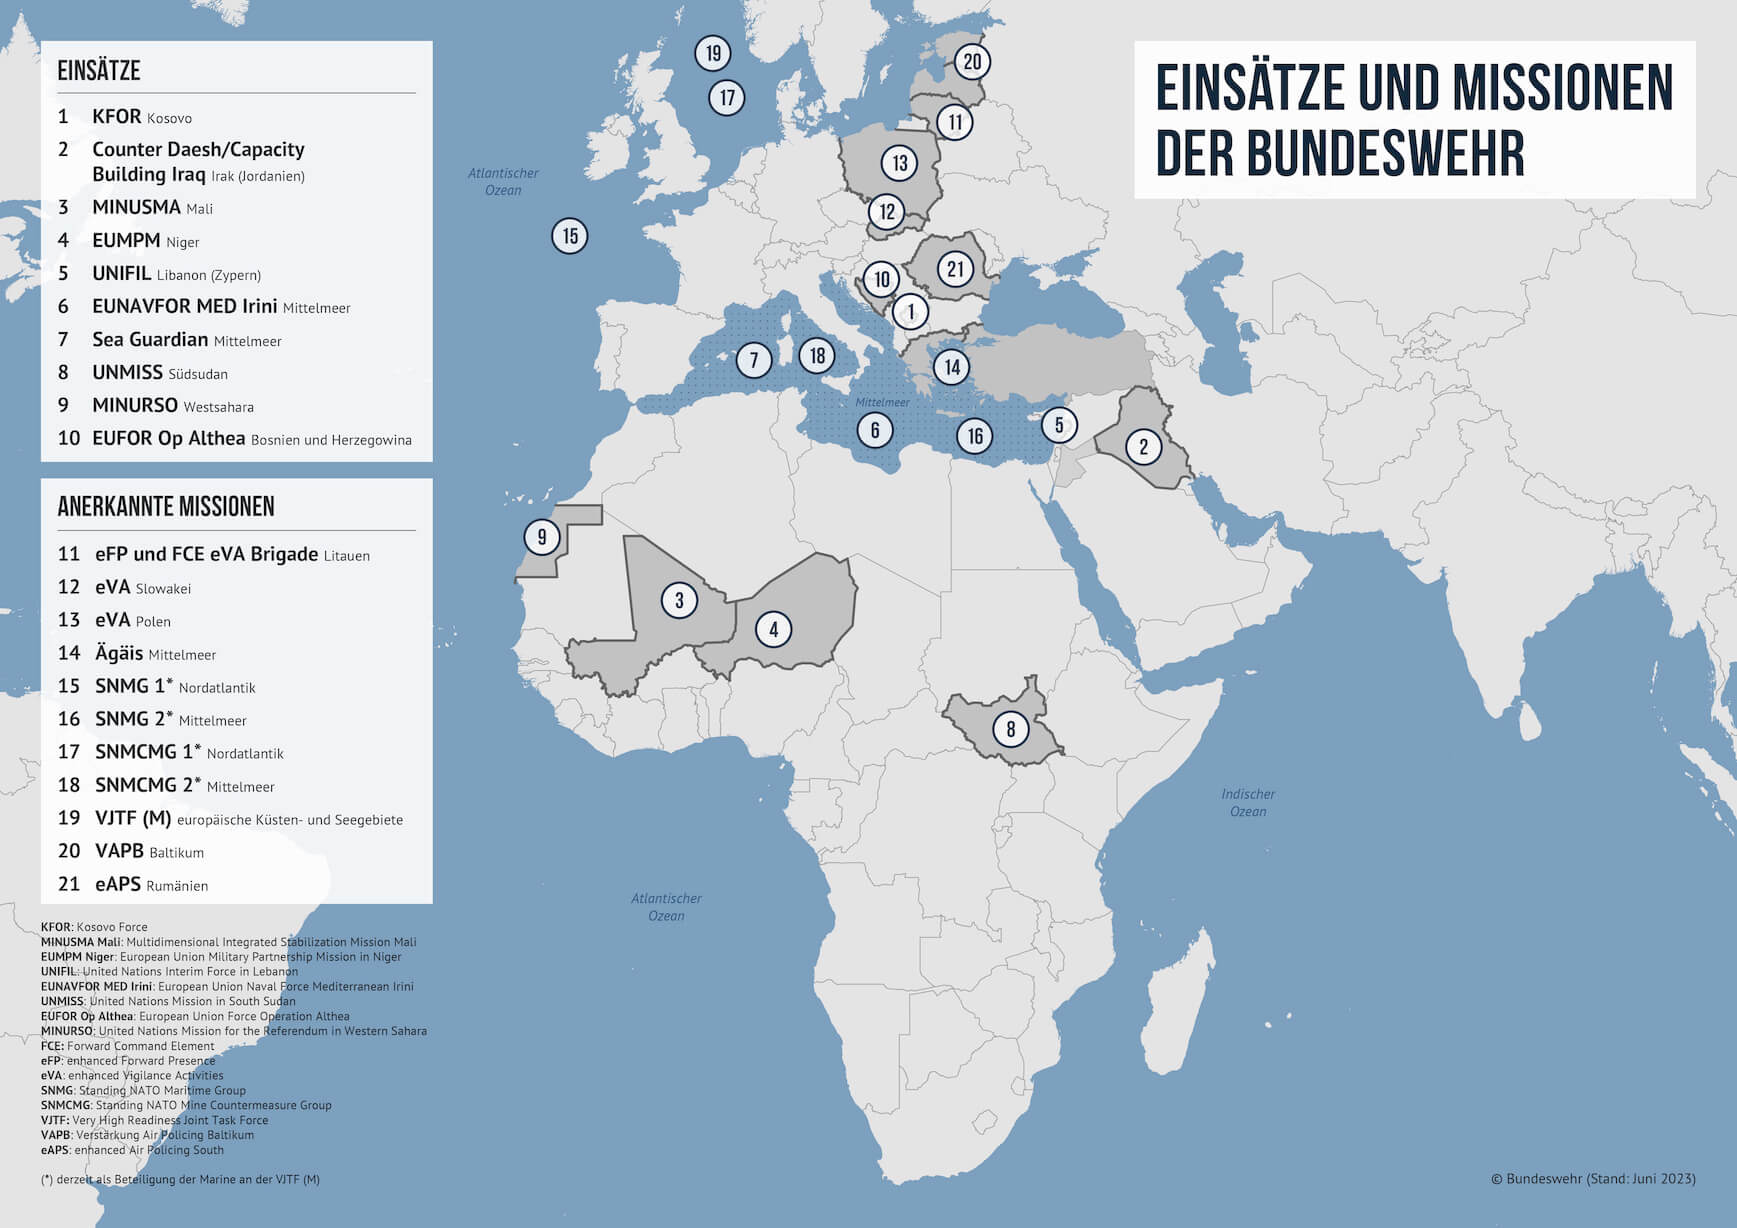 Karte von Europa und Afrika auf der Länder markiert sind, in denen die Bundeswehr derzeit Einsätze und Missionen hat